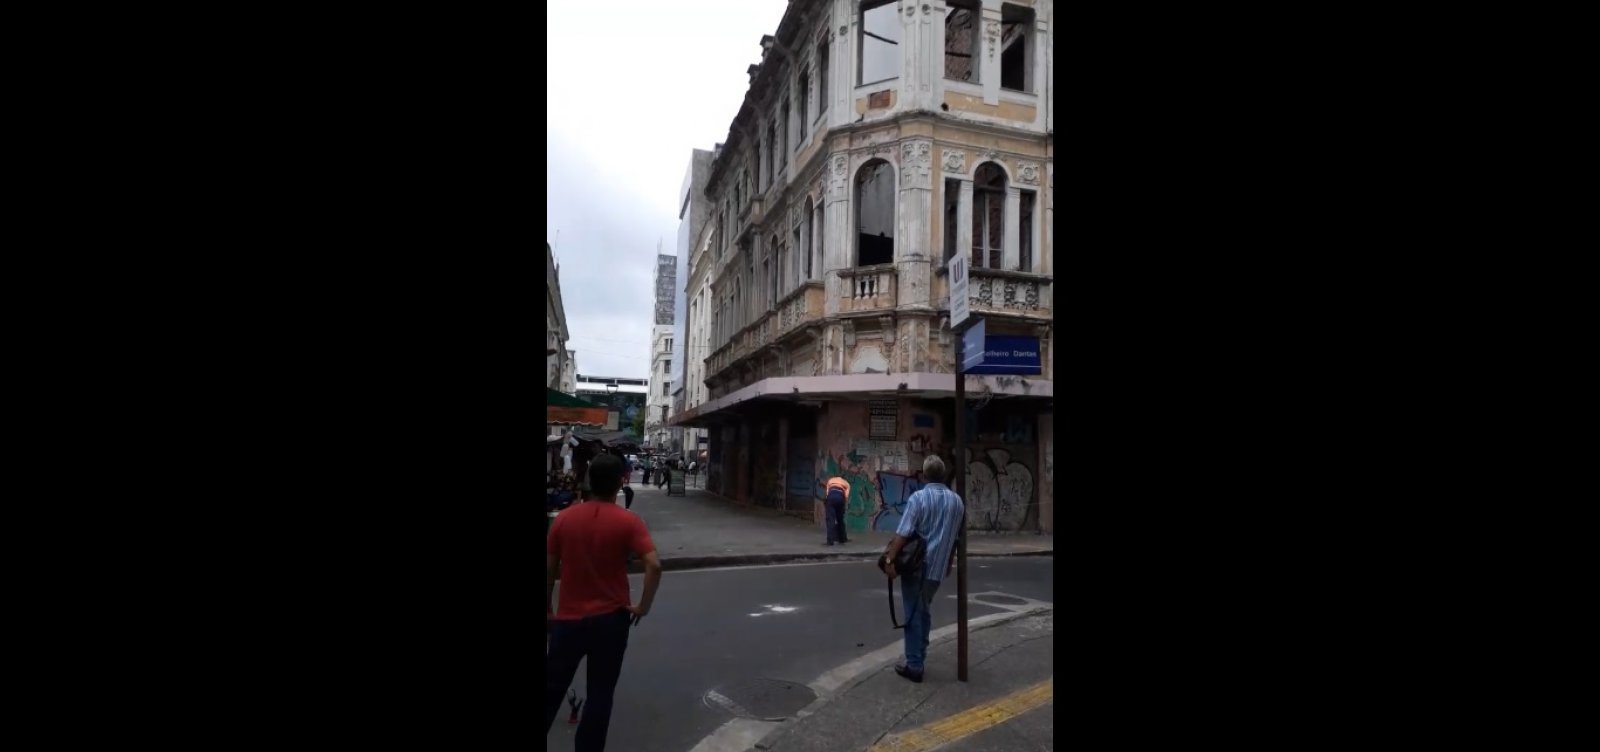 Iphan autoriza demolição de prédio no Comércio, em Salvador